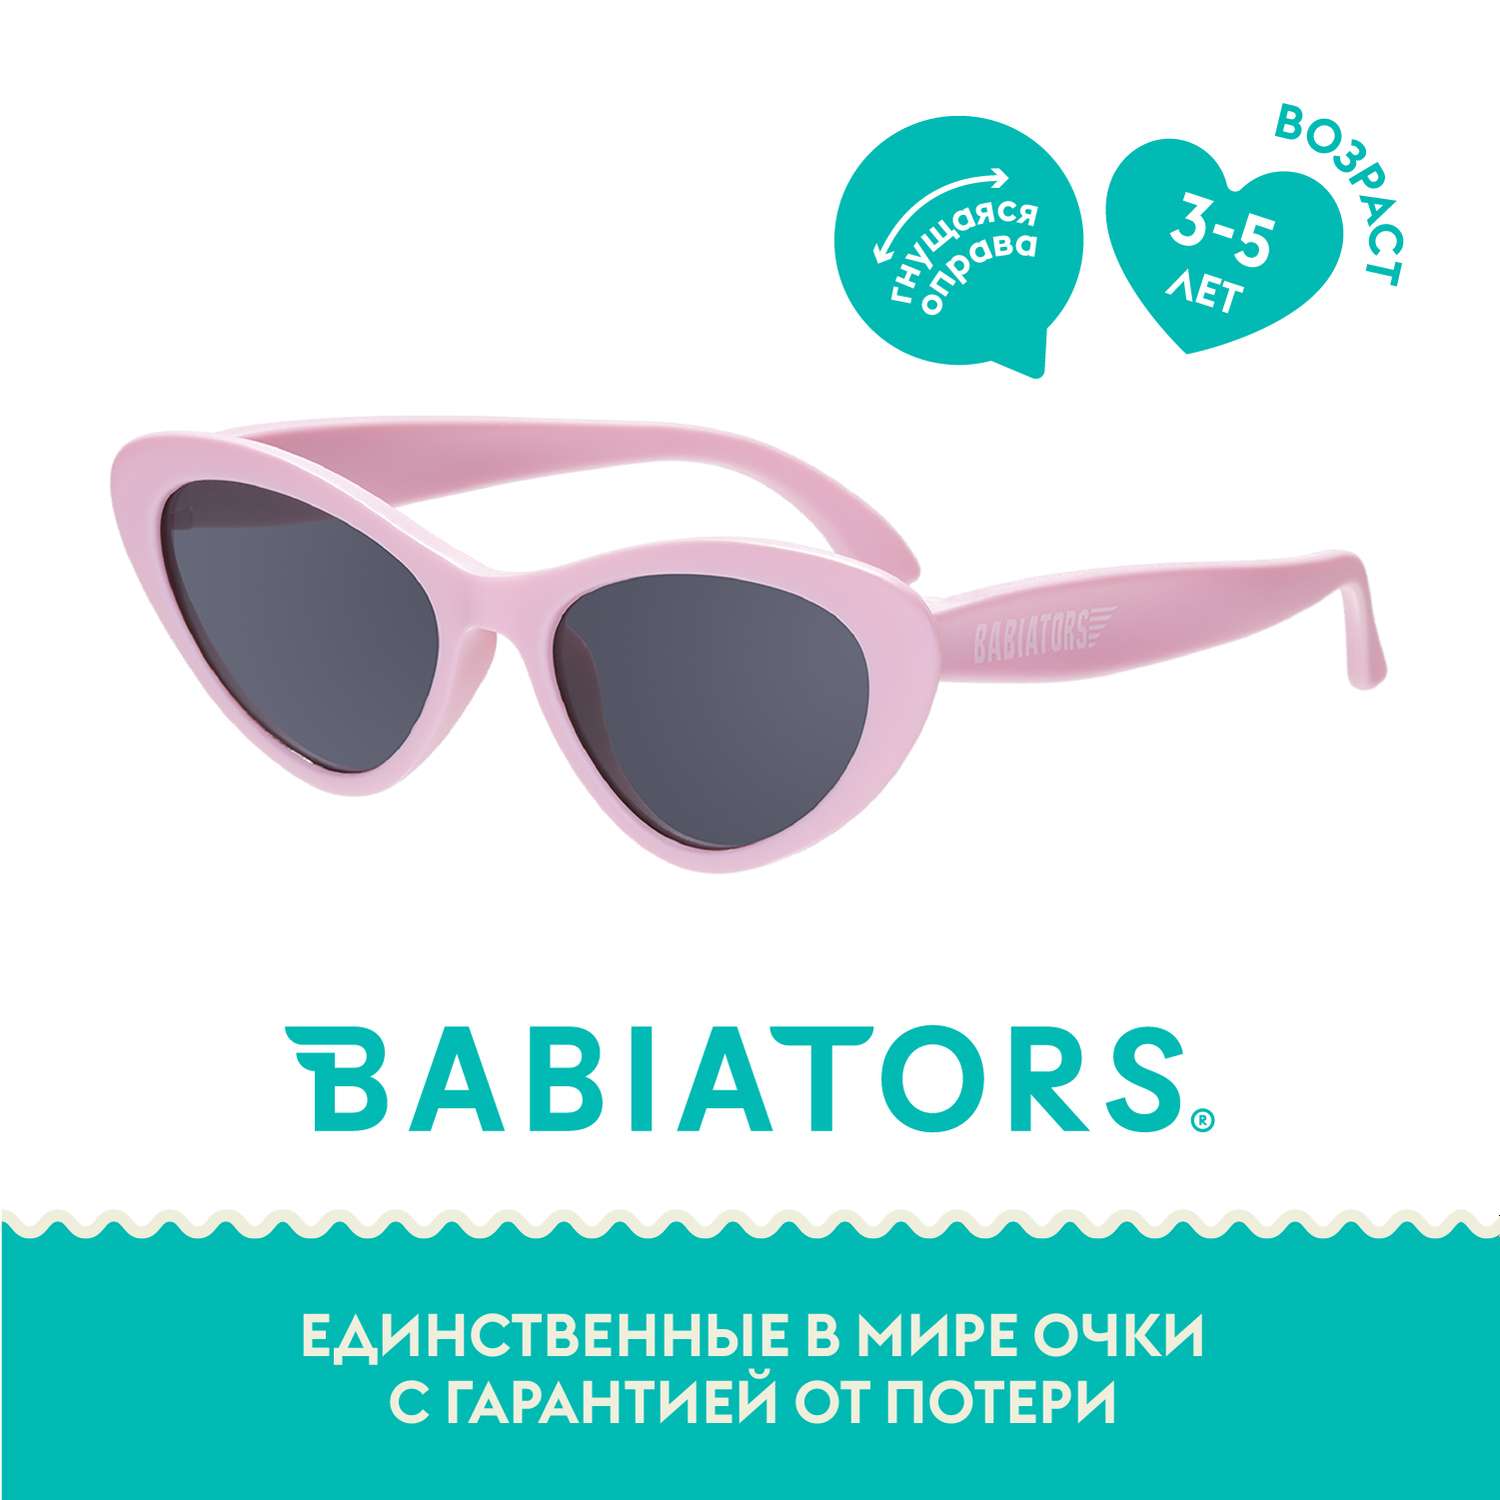 Солнцезащитные очки Babiators Original Cat-Eye Розовая леди 3-5 CAT-008 - фото 1